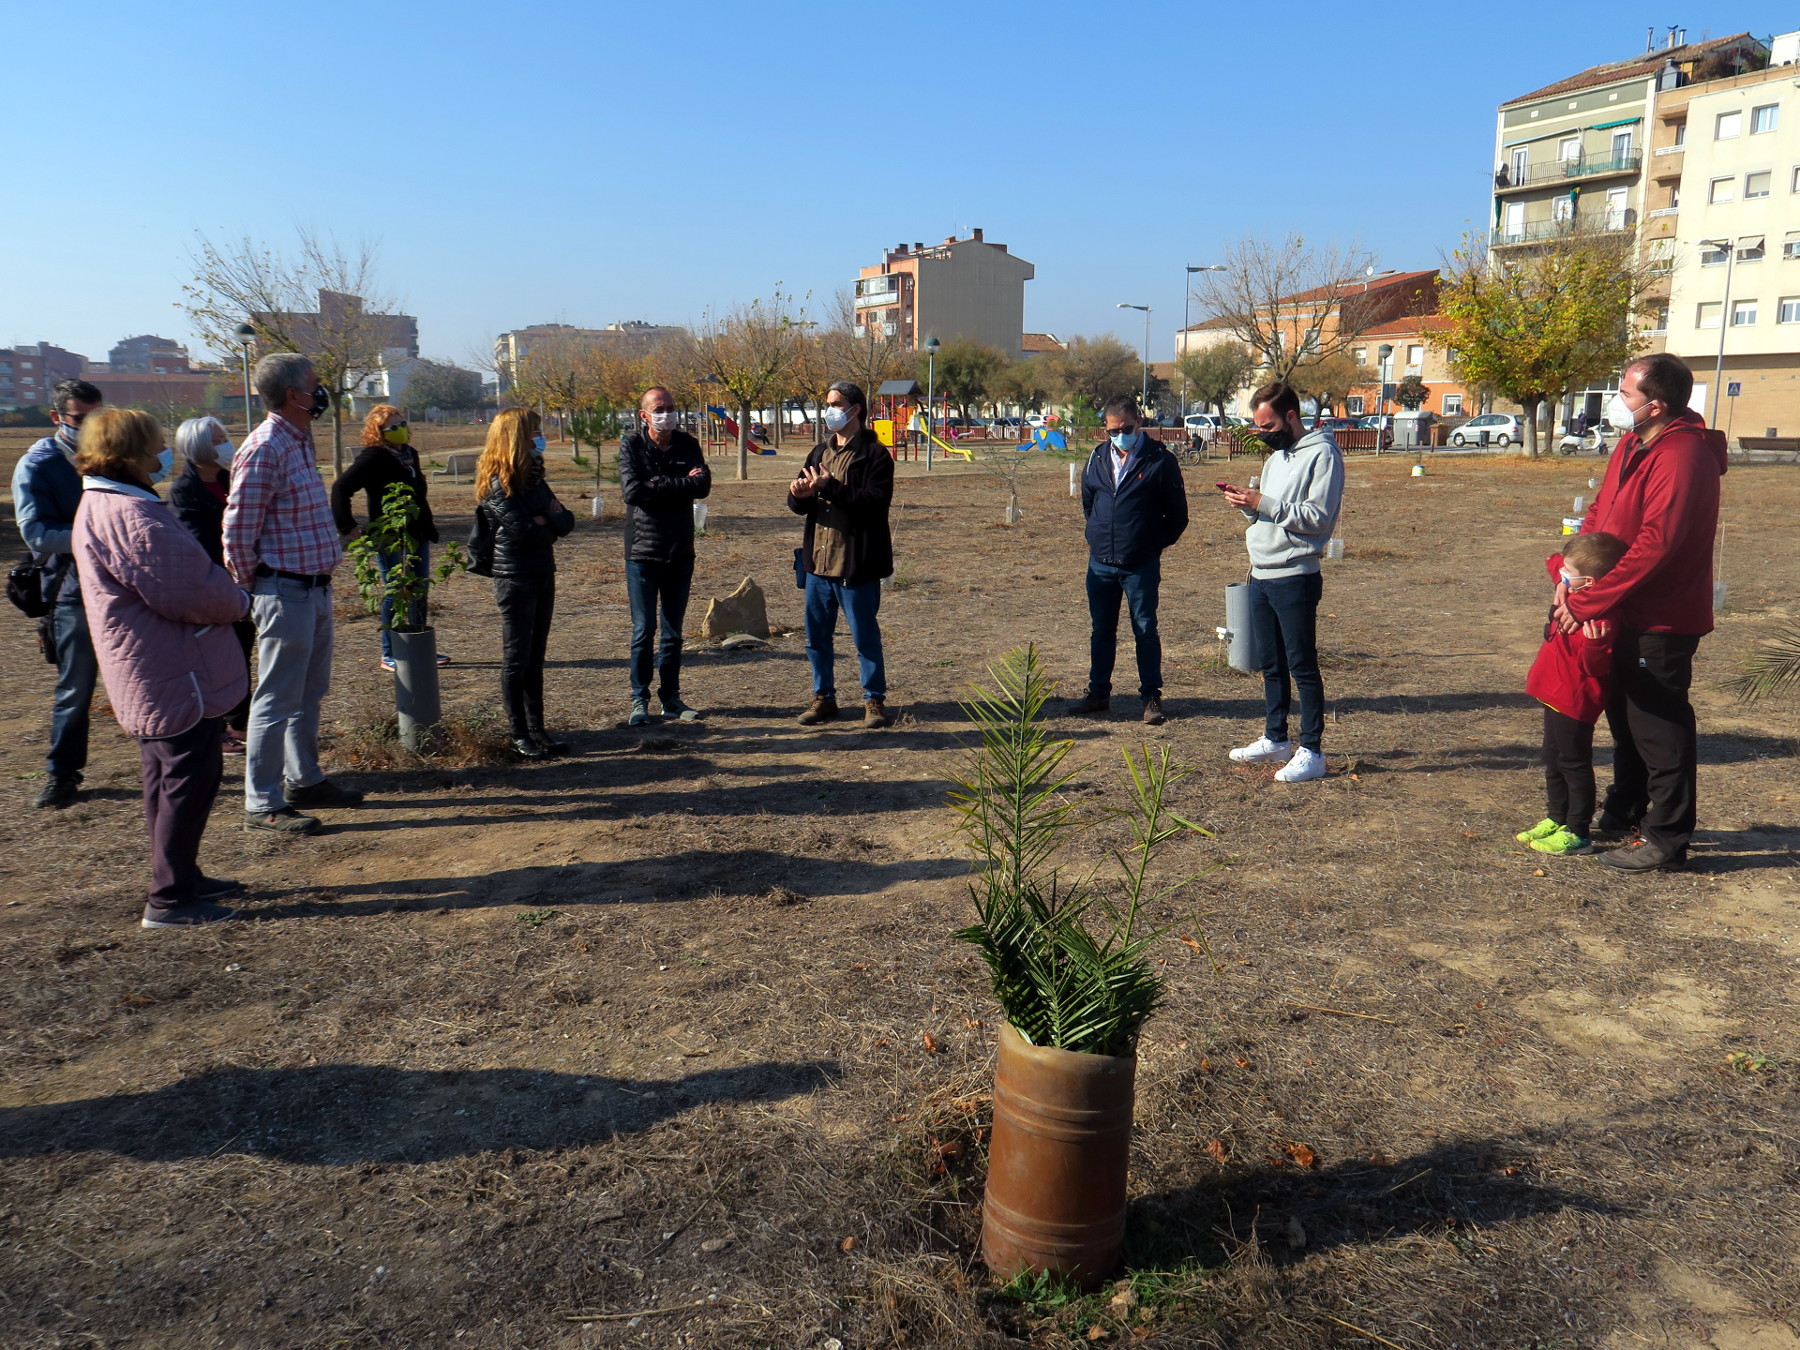 El tinent d'alcalde Sergi Talamonte ha explicat als veïns i veïnes que aquest espai verd serà un parc urbà